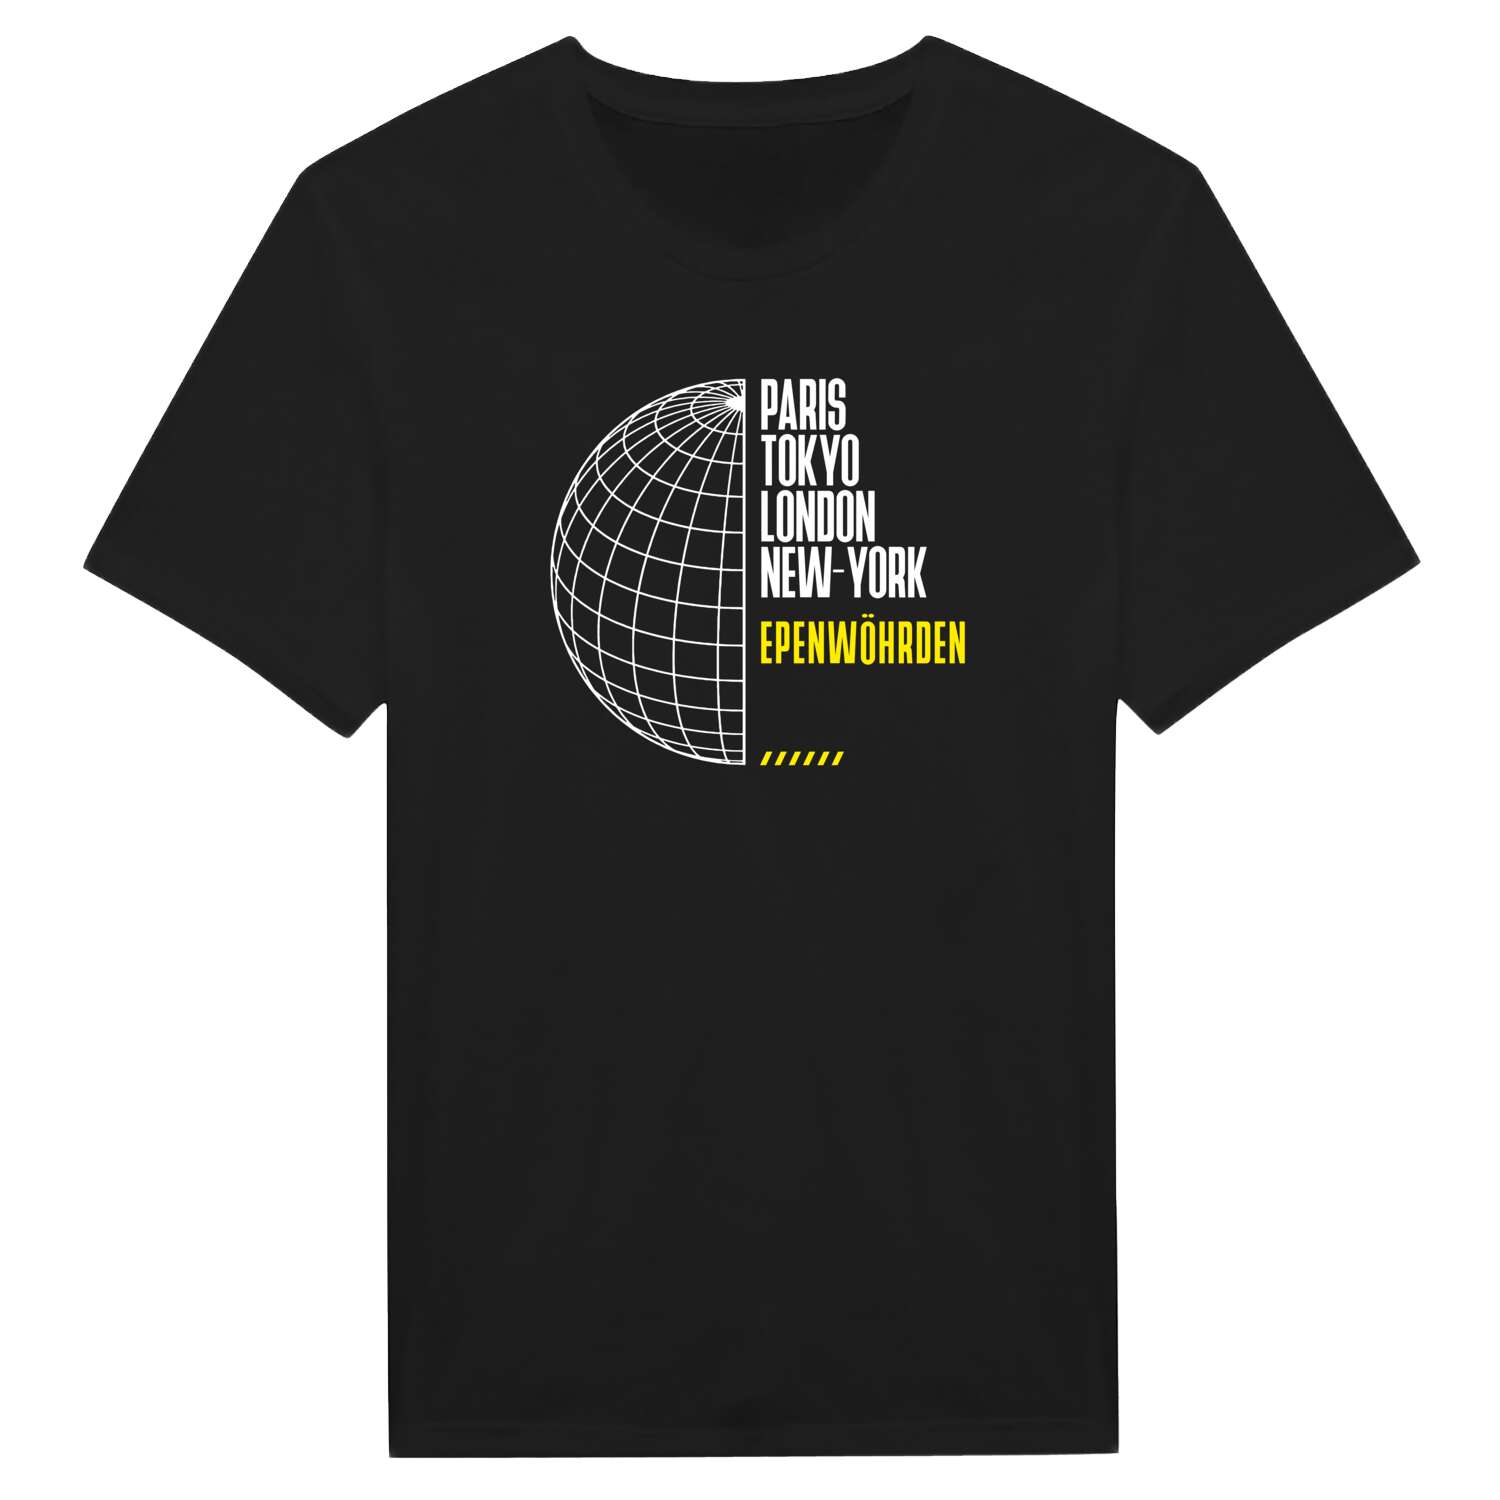 Epenwöhrden T-Shirt »Paris Tokyo London«